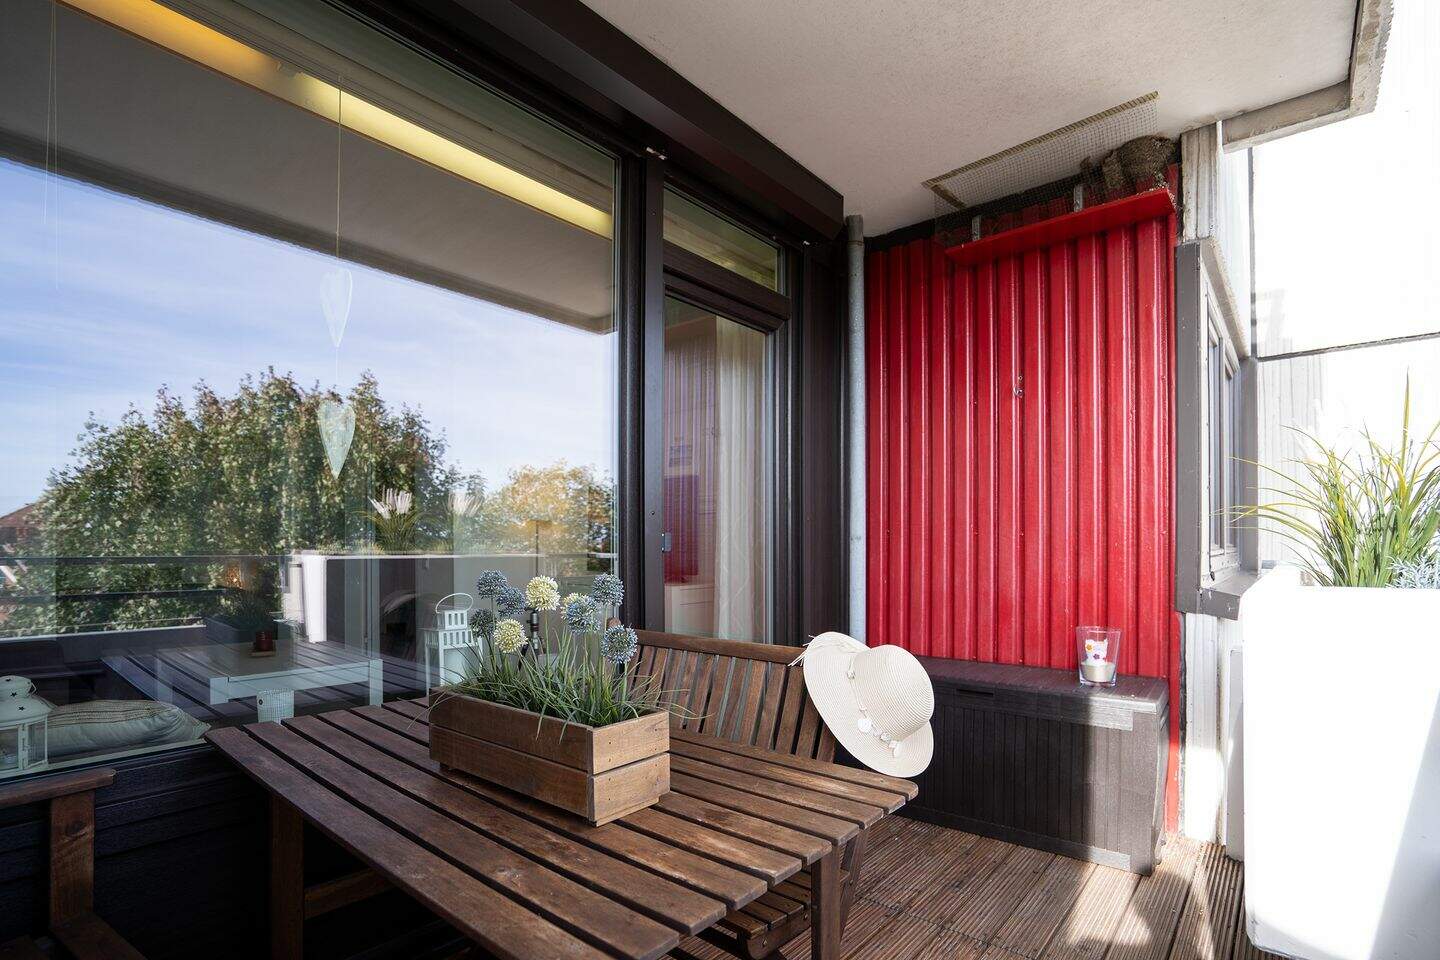 Verkauft - Ferienwohnung mit Balkon 300m zum Strand mit 2 PKW Stellplätze Teil-Meerblick